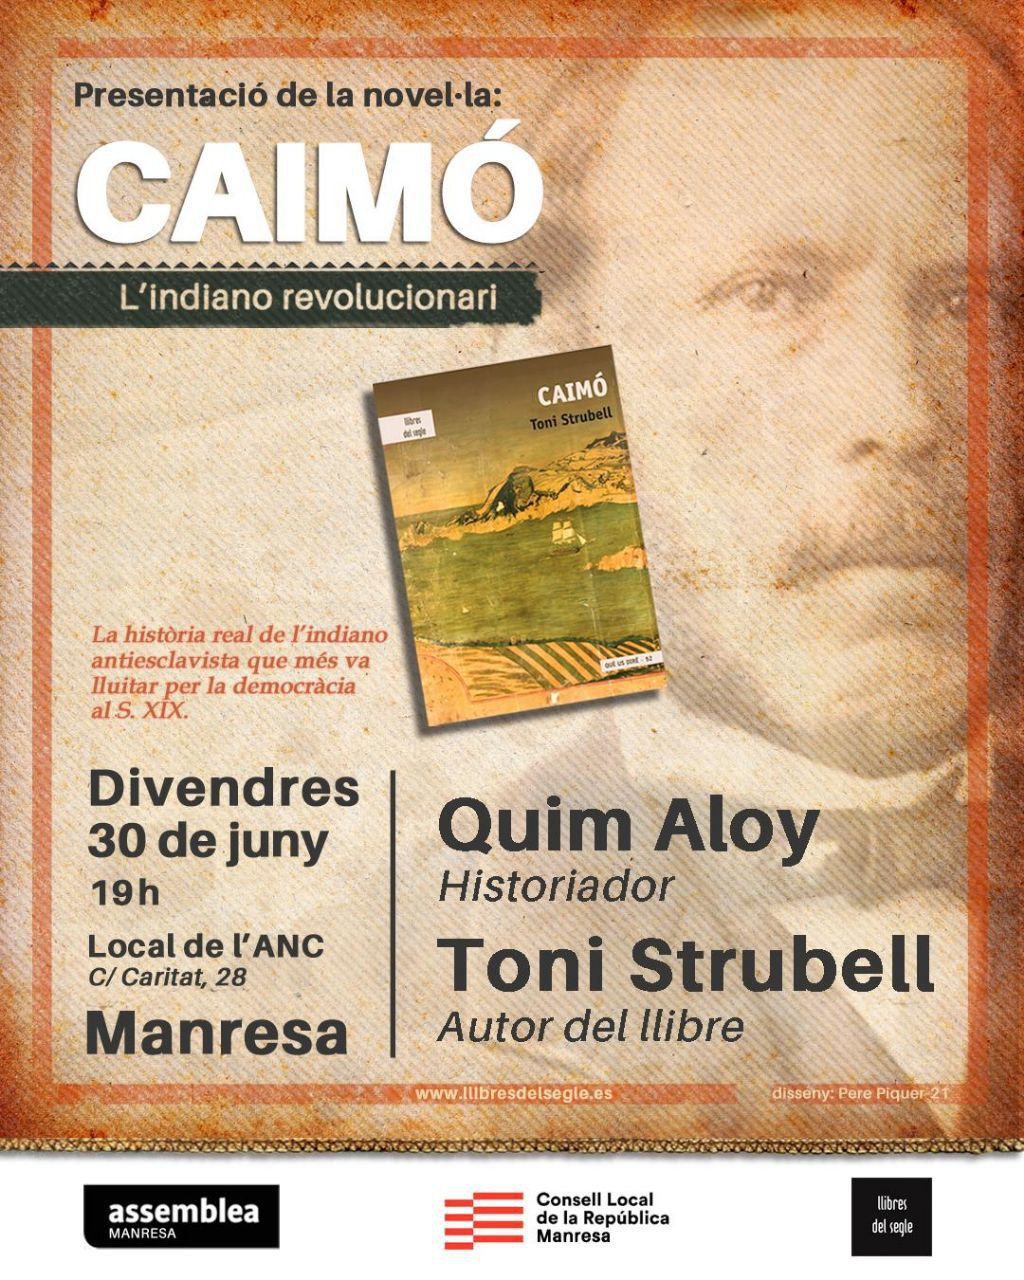 Presentació de la novel·la "Caimó: L'indiano revolucionari"